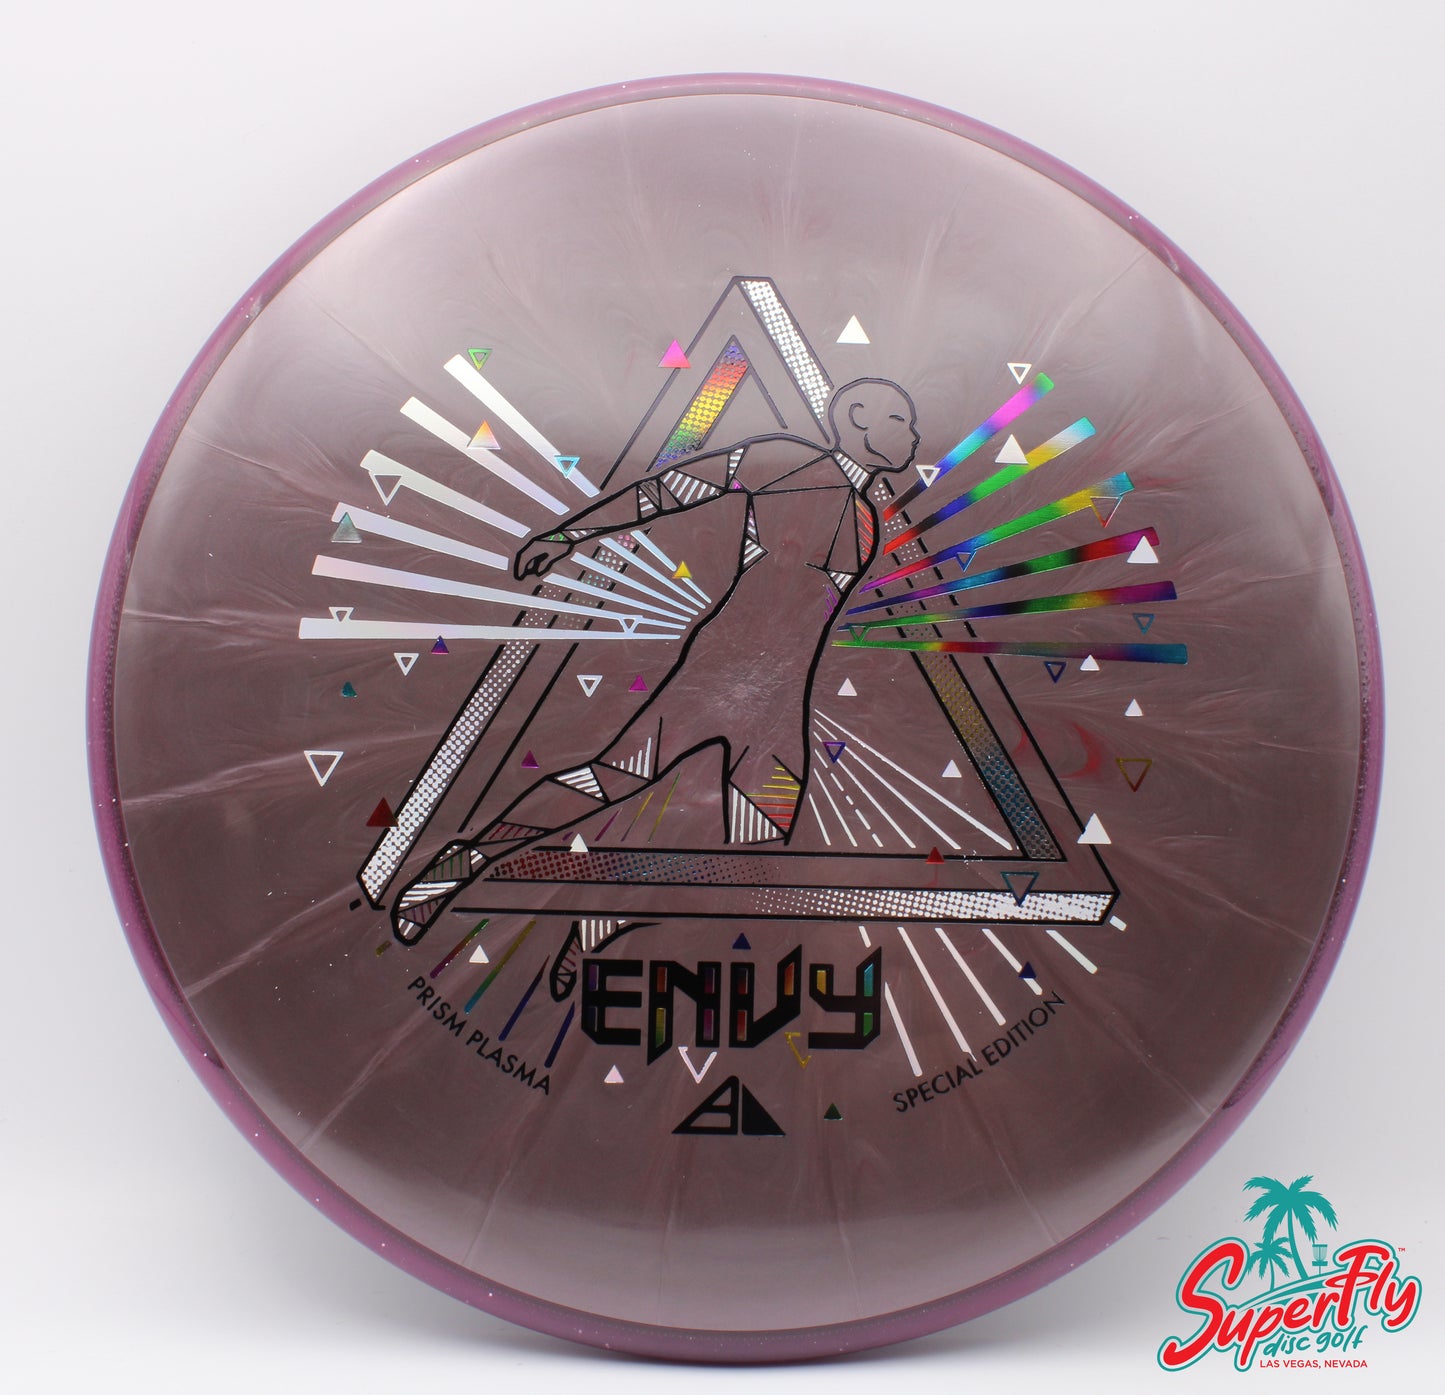 Axiom Discs Special Edition Prism Plasma Envy